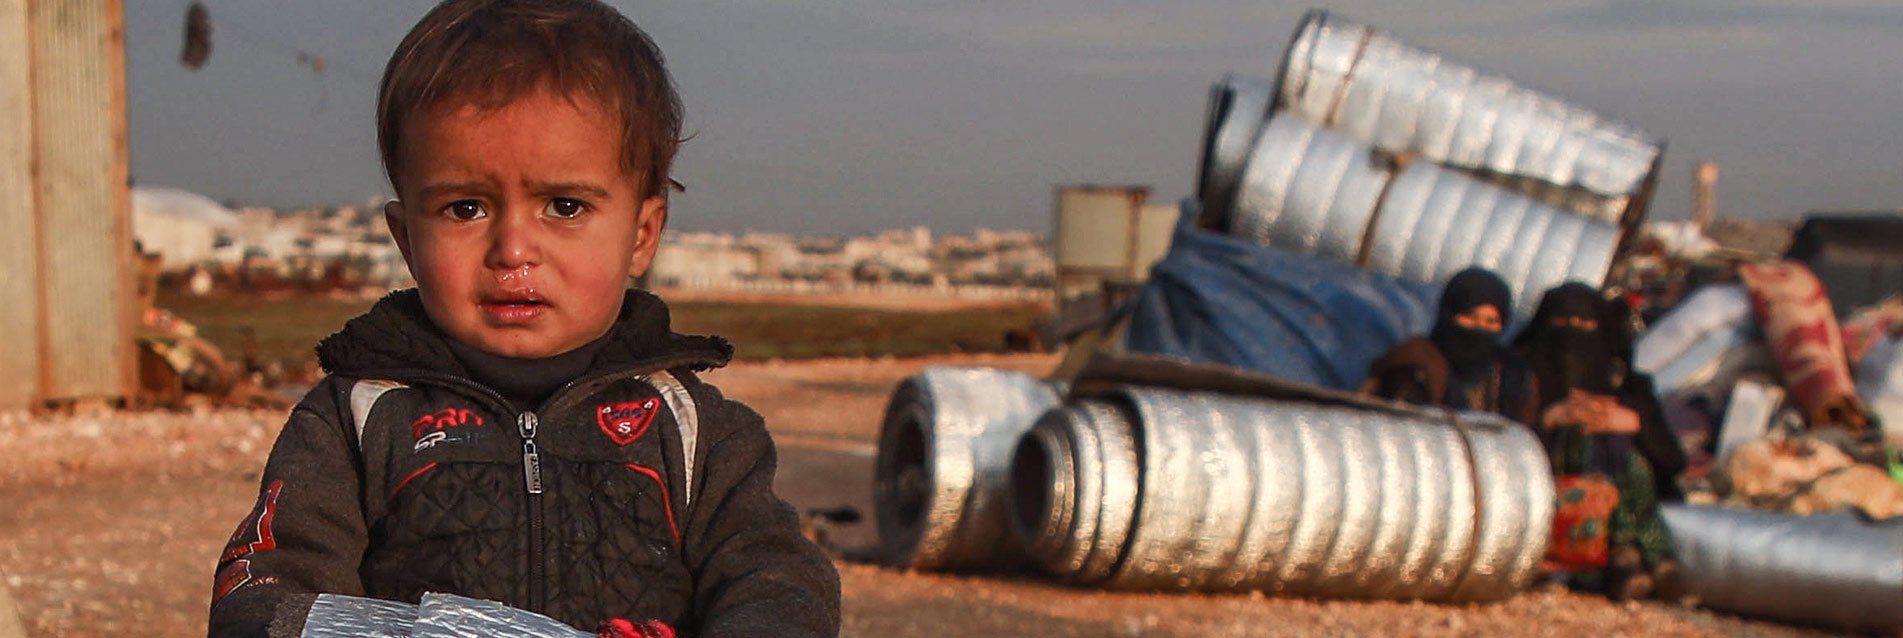 Crise humanitaire en Syrie : la Fondation de France mobilisée